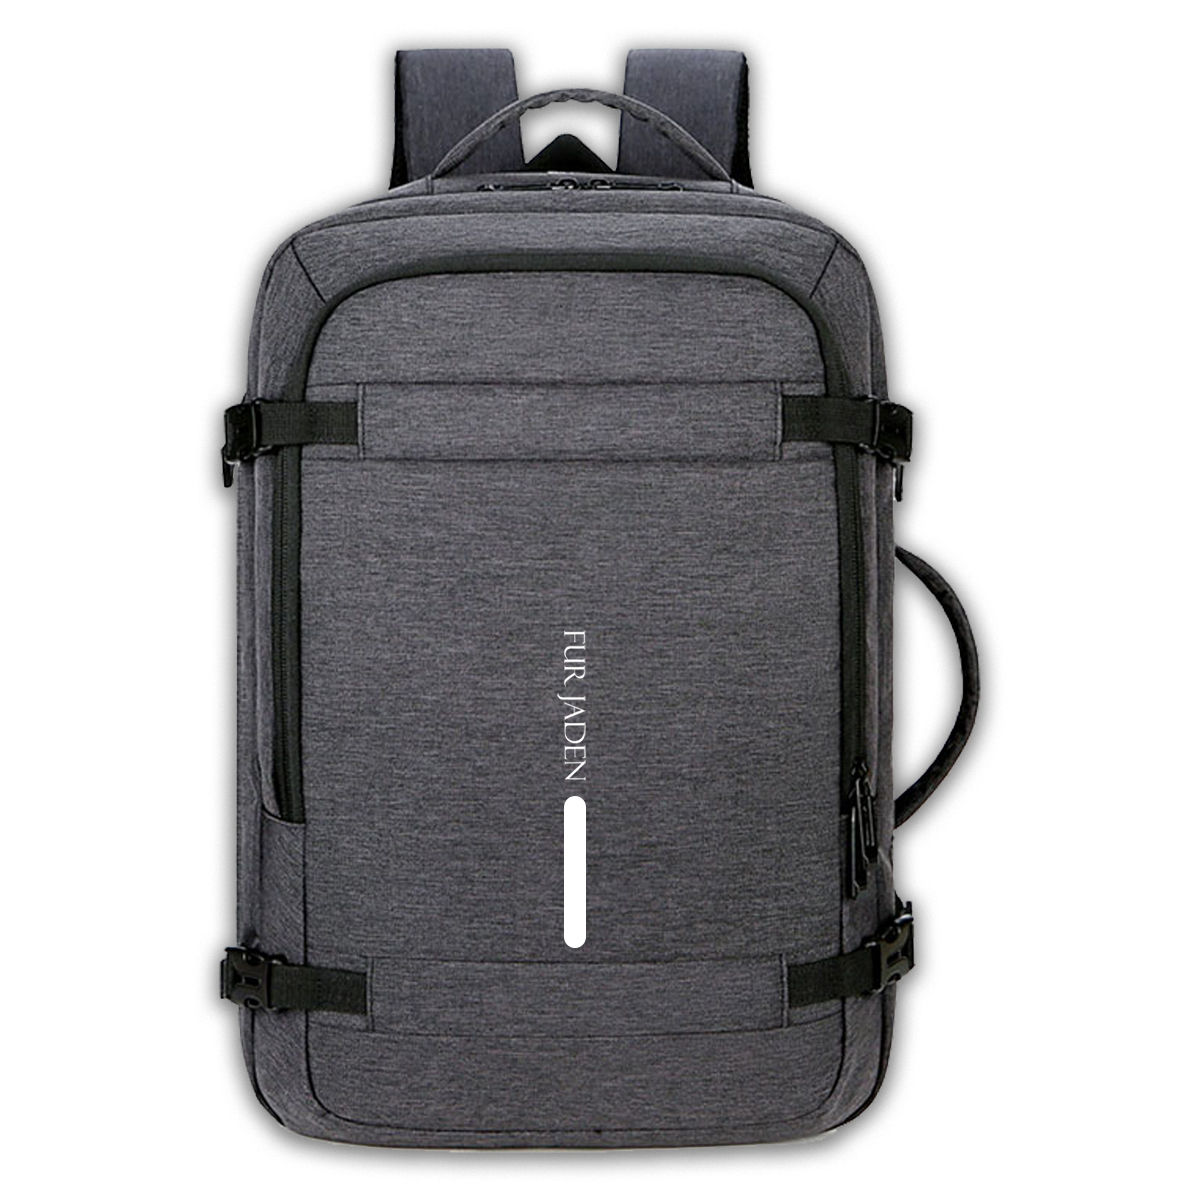 Buy FUR JADEN Grey Weekender Travel Laptop Backpack With Anti Theft ...